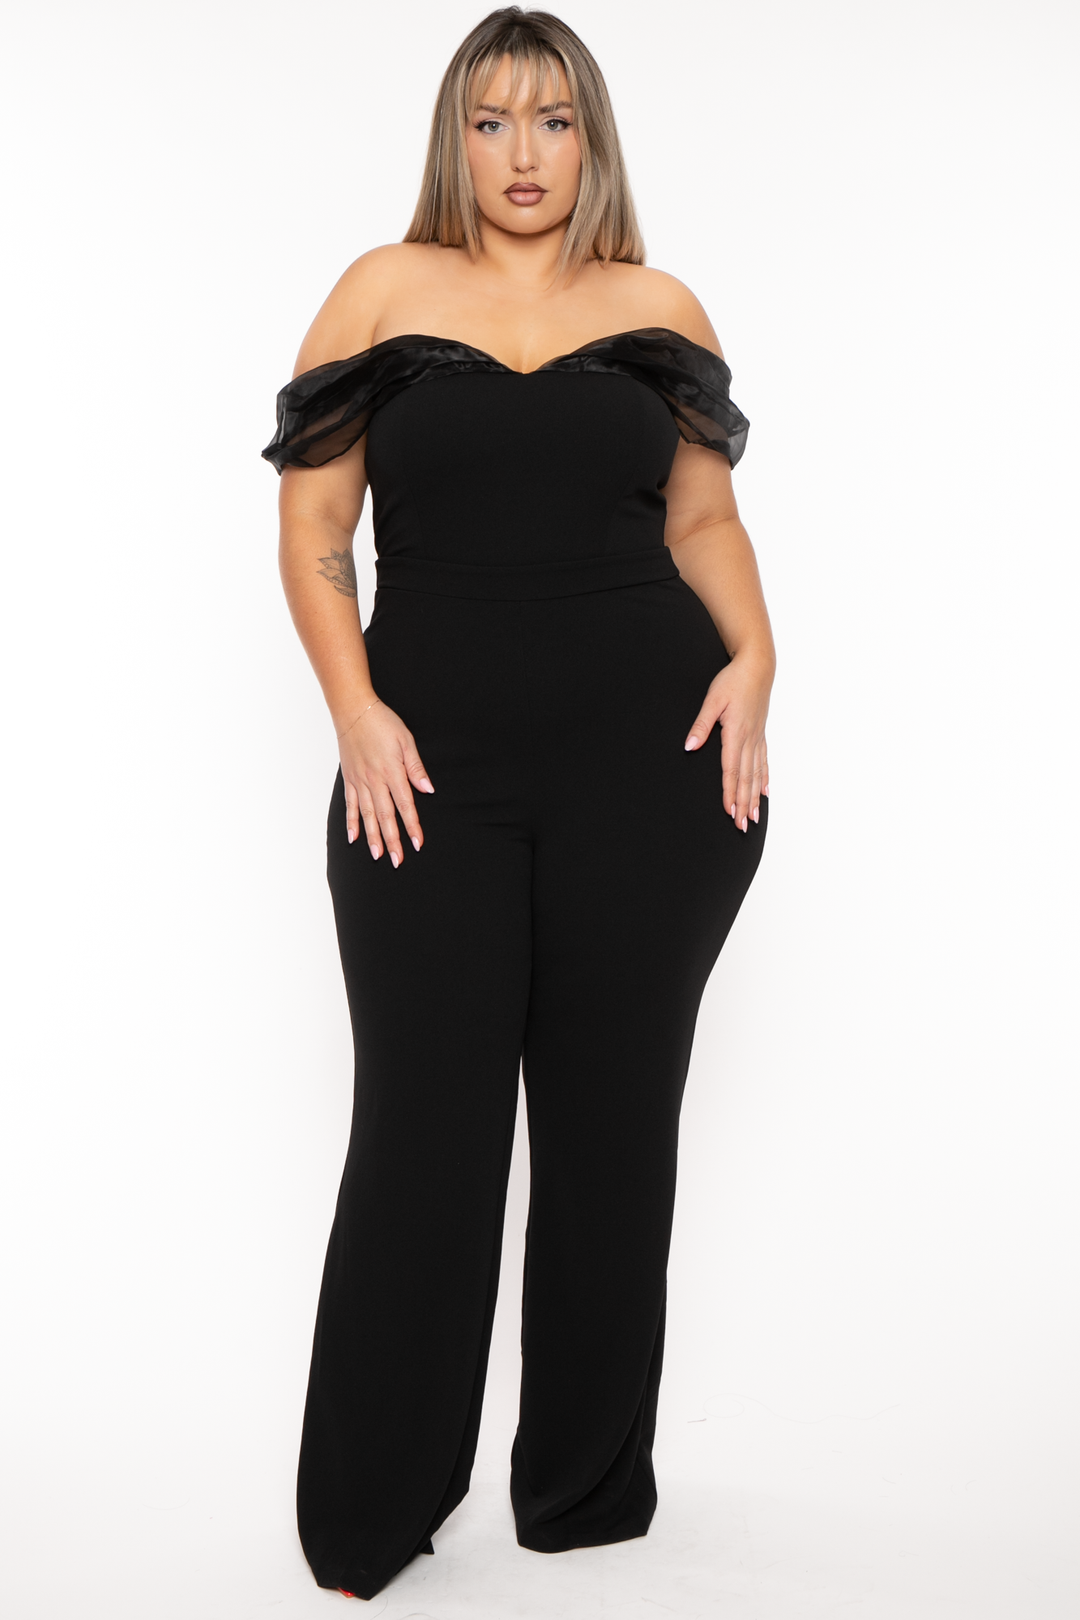 Plus Size Jolie Strapless Jumpsuit- Black – Curvy Sense